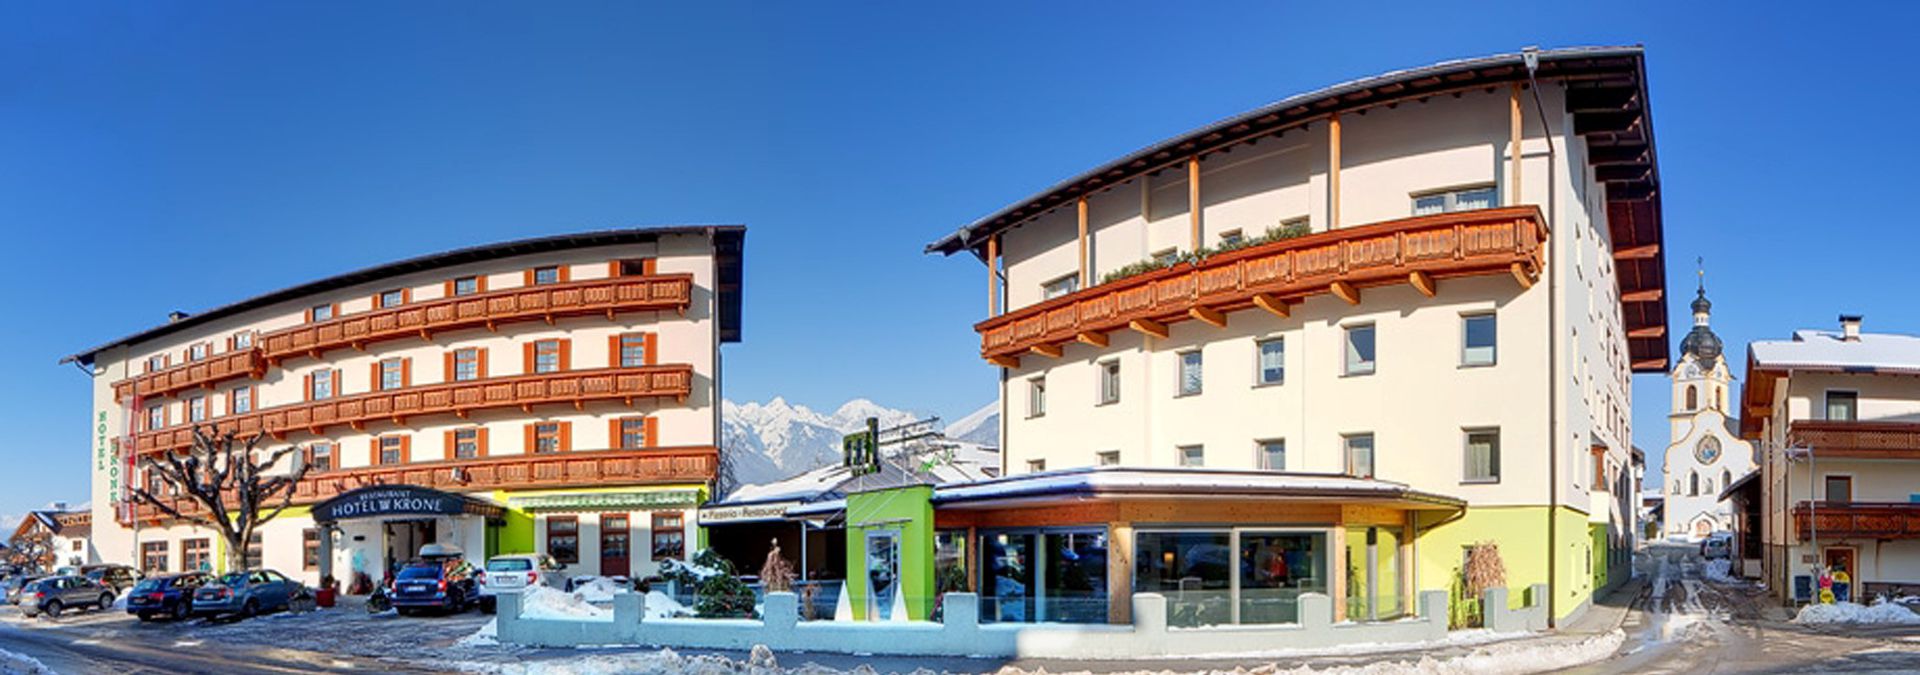 Familjedrivna och 3-stjärniga Hotel Krone ligger centralt och lugnt i Oberperfuss. Till skidområdet "Rangger Köpfl" är det ca 900 meter. Till närmsta längdskidspår och hållplats för skidbussen är det ungefär 100 meter. Det i typisk tyrolsk stil inredda hotellet renoverades delvis 2019 och består av en huvud- och en sidobyggnad, som är förbundna med varandra genom en underjordisk gång. Hotellet förfogar över reception och lobby, Wi-Fi (mot avgift), två hissar, frukostrum, trevliga sällskapsrum, en hotellbar med lounge (kl 10?00) och restaurang, en hotellegen kägelbana (mot avgift) samt ett skidrum med pjäxtorkar. Parkeringsplatser finns till kostnadsfritt förfogande (beroende på tillgång). Wellnessområdet (kl 16?22) med finsk bastu, ångbad och vilorum kan användas mot avgift (onsdagar: dambastu, torsdagar: stängt). Dessutom erhålls Welcome Card som ger diverse kostnadsfria och rabatterade tjänster i regionen, t.ex. rabatt på inträde till simhallen i Axams fritidscentrum samt på turer med kollektivtrafik (med förbehåll om ändringar, se information på plats). För vistelser om 3 nätter eller längre kan liften Oberpfuss användas gratis för vandring eller kälkåkning. Rum De gemytligt och trevligt inredda rummen förfogar över badkar eller dusch/WC, sat-tv, Wi-Fi (mot avgift), telefon, hårfön och i vissa fall balkong. Rummen ligger i huvud- eller sidobyggnaden. Måltider Den i priset inkluderade halvpensionen omfattar, frukostbuffé och en 3-rättersmeny på kvällen, ibland inkl. salladsbuffé. Vid vistelse om 5 nätter (sö?fr) ordnas temakväll två gåner i veckan (t.ex. pizza- och pasta-kväll). På nyårsafton serveras en särskild 5-rätters galamiddag. Dietkost och glutenfria rätter är möjliga mot föranmälan (mot avgift).